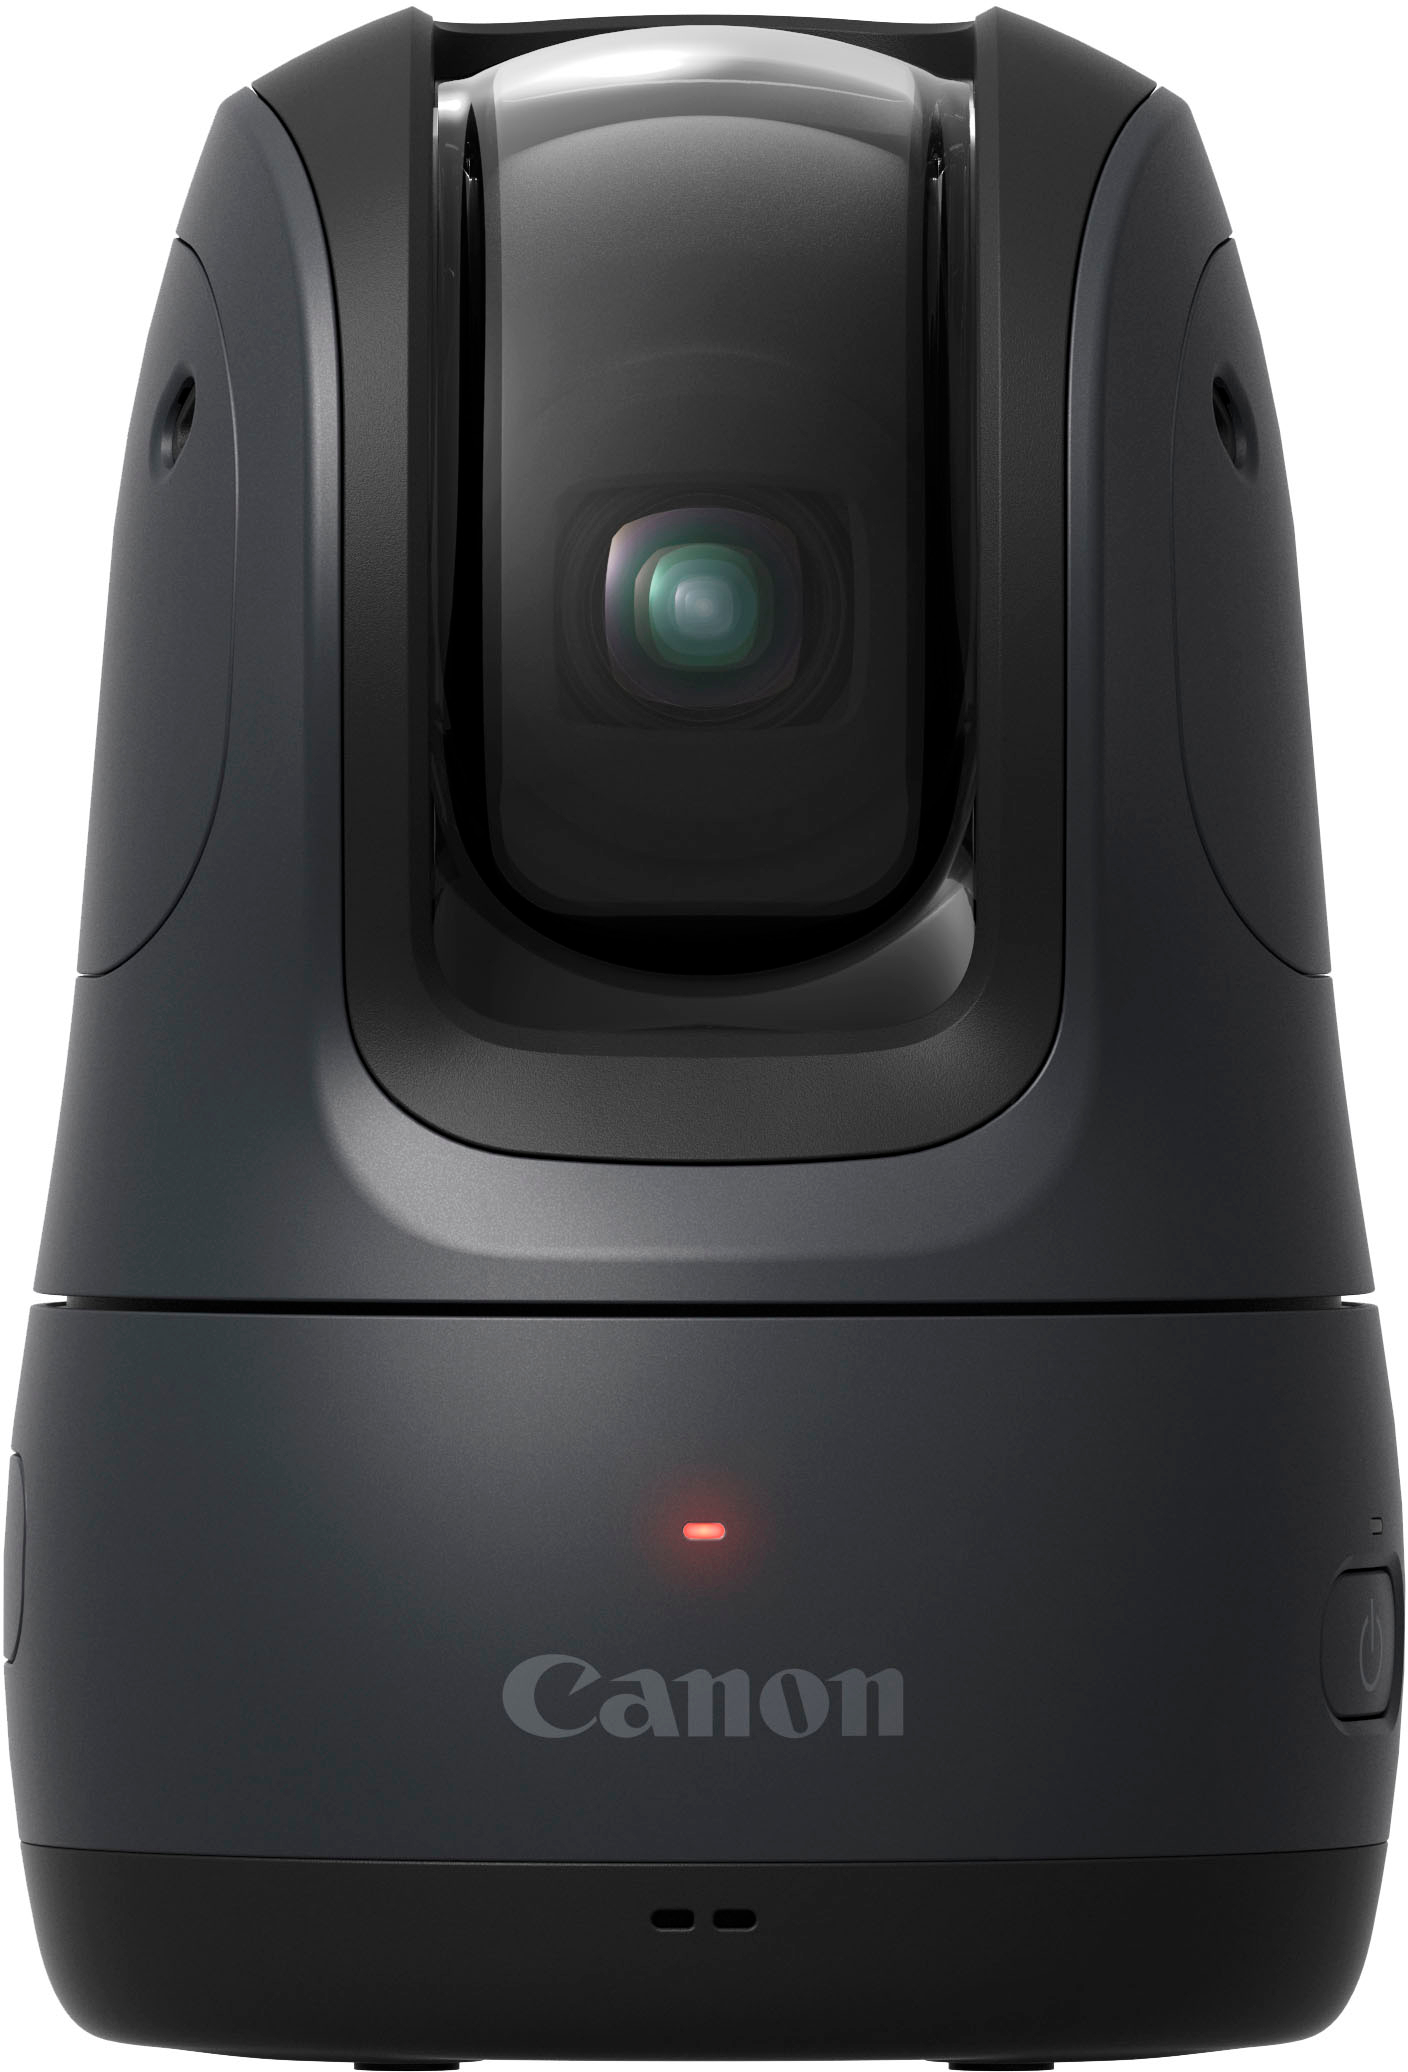 カメラ デジタルカメラ Customer Reviews: Canon PowerShot Pick Active Tracking PTZ 11.7MP 